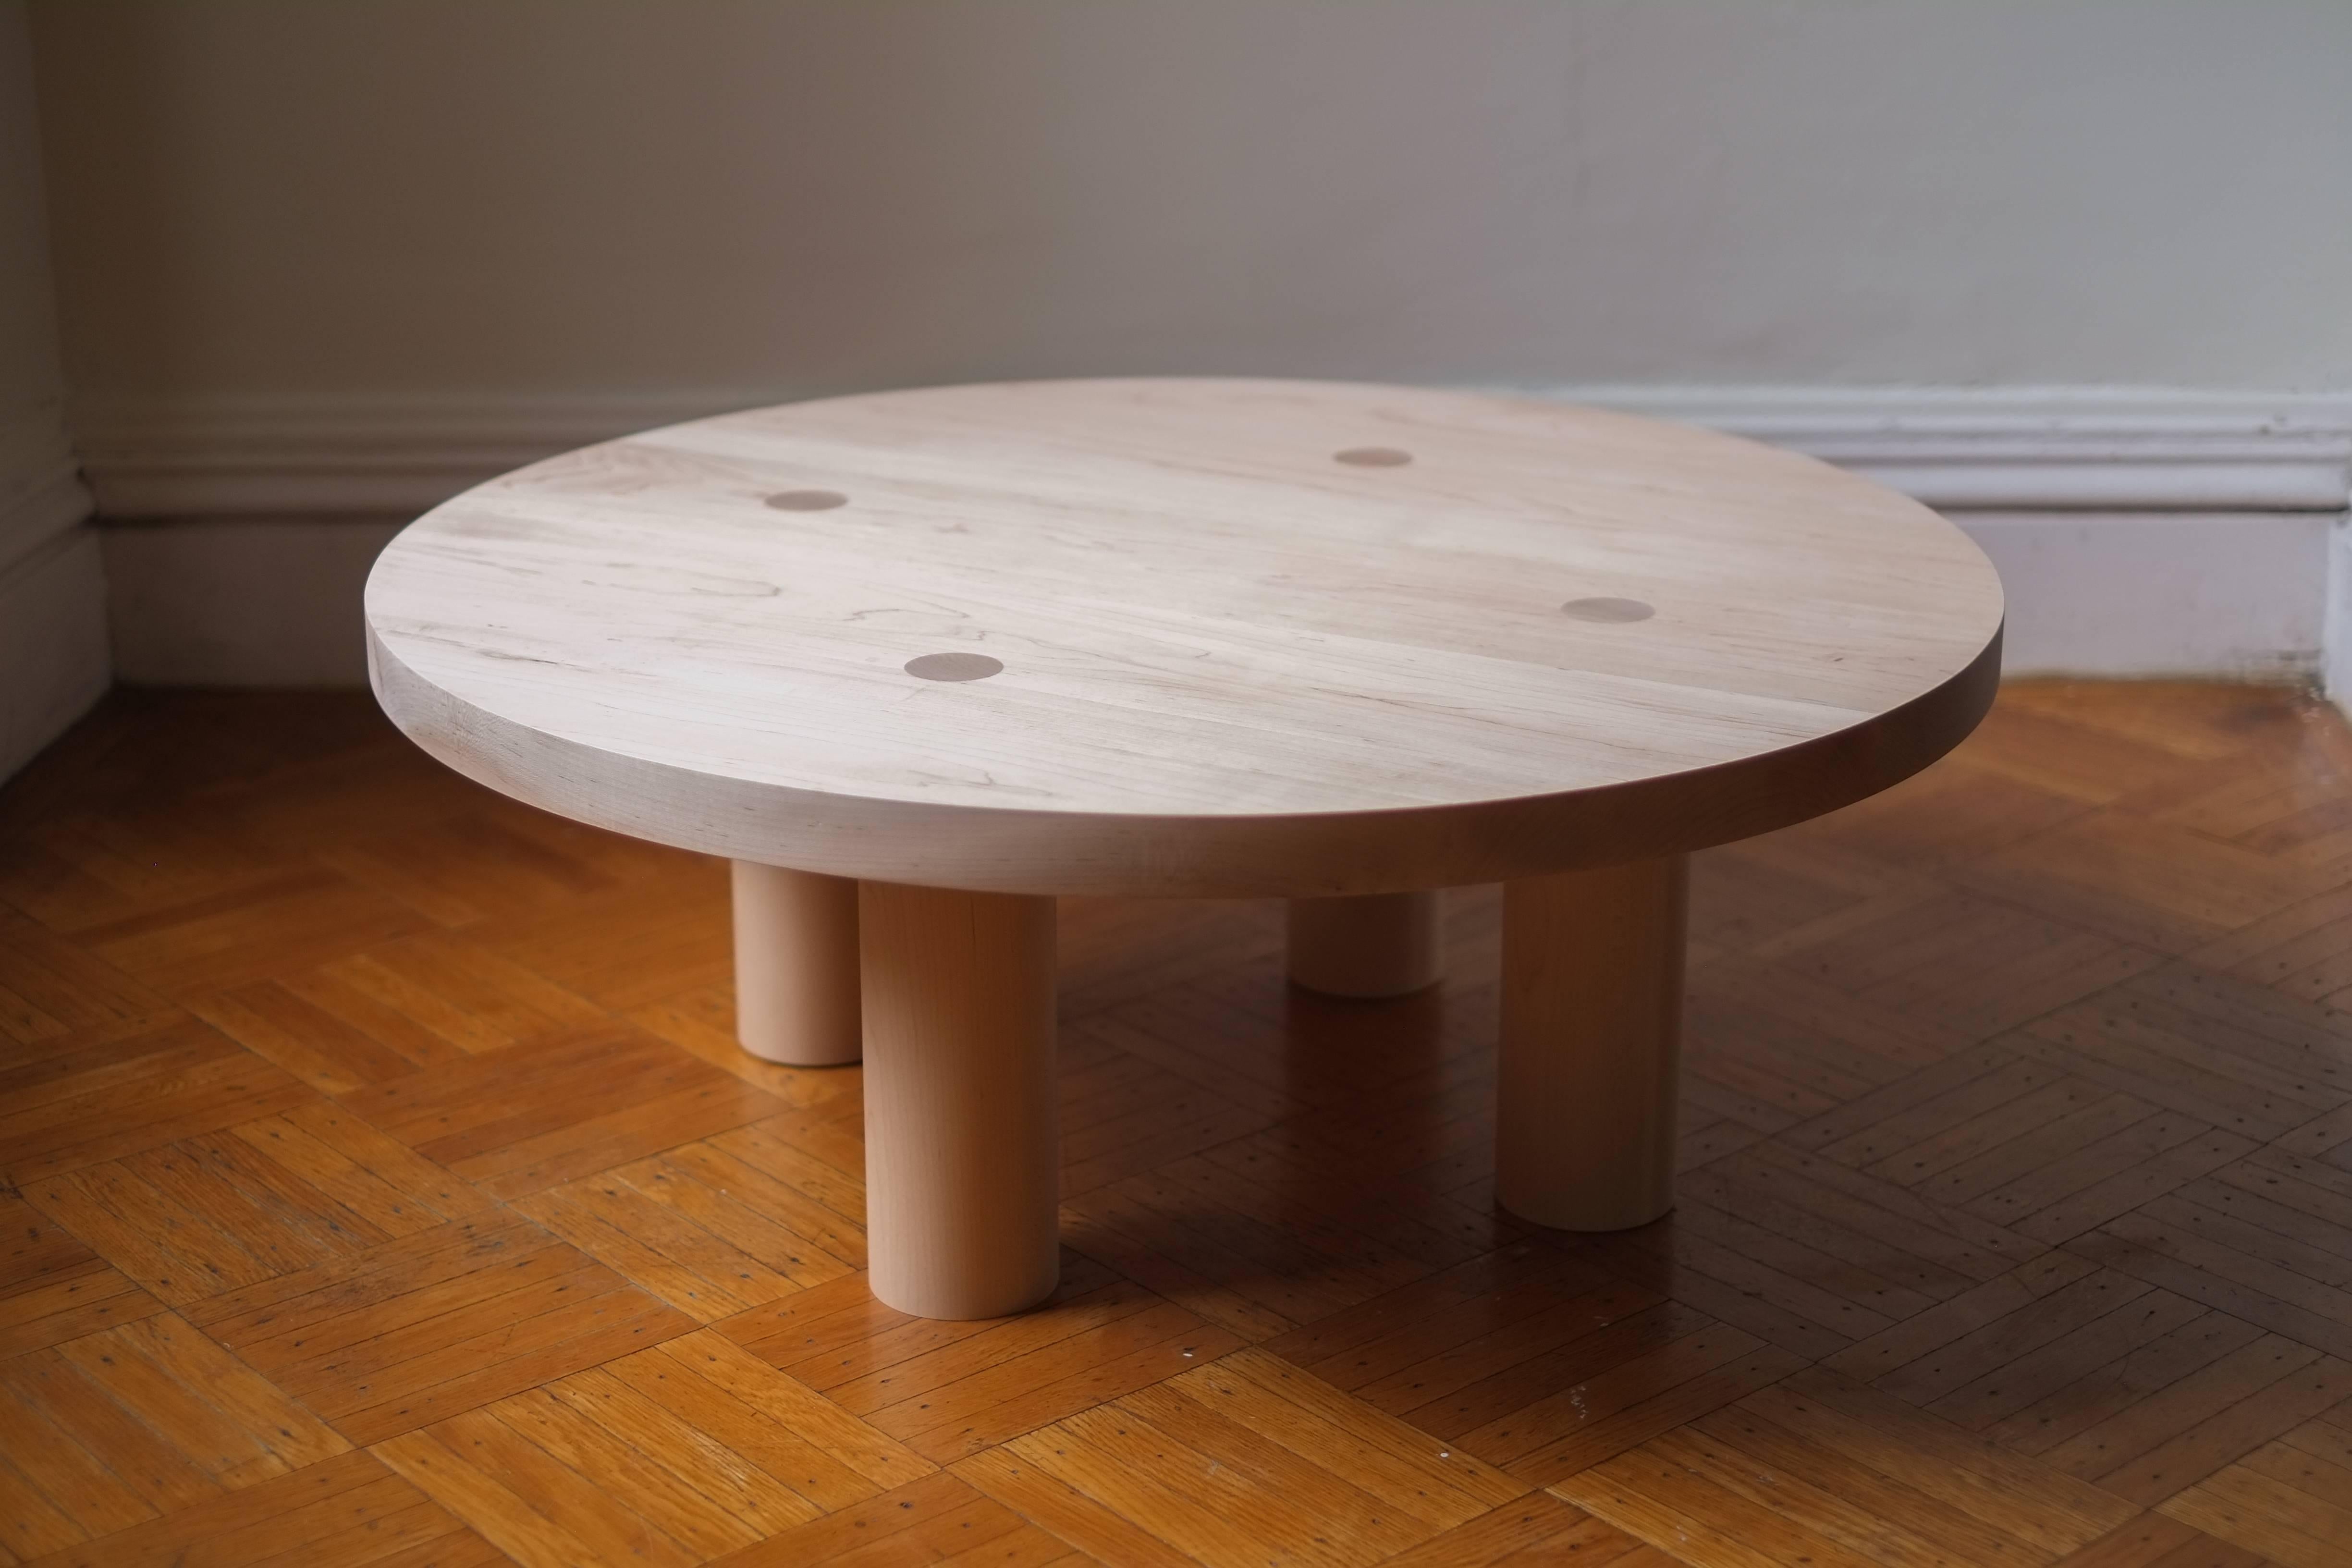 Cette table basse en bois contemporaine et minimale est dotée de quatre grands pieds ronds qui percent le plateau de 2 pouces d'épaisseur pour révéler la menuiserie et éliminer le besoin de tout autre élément structurel. Ce détail communique sa